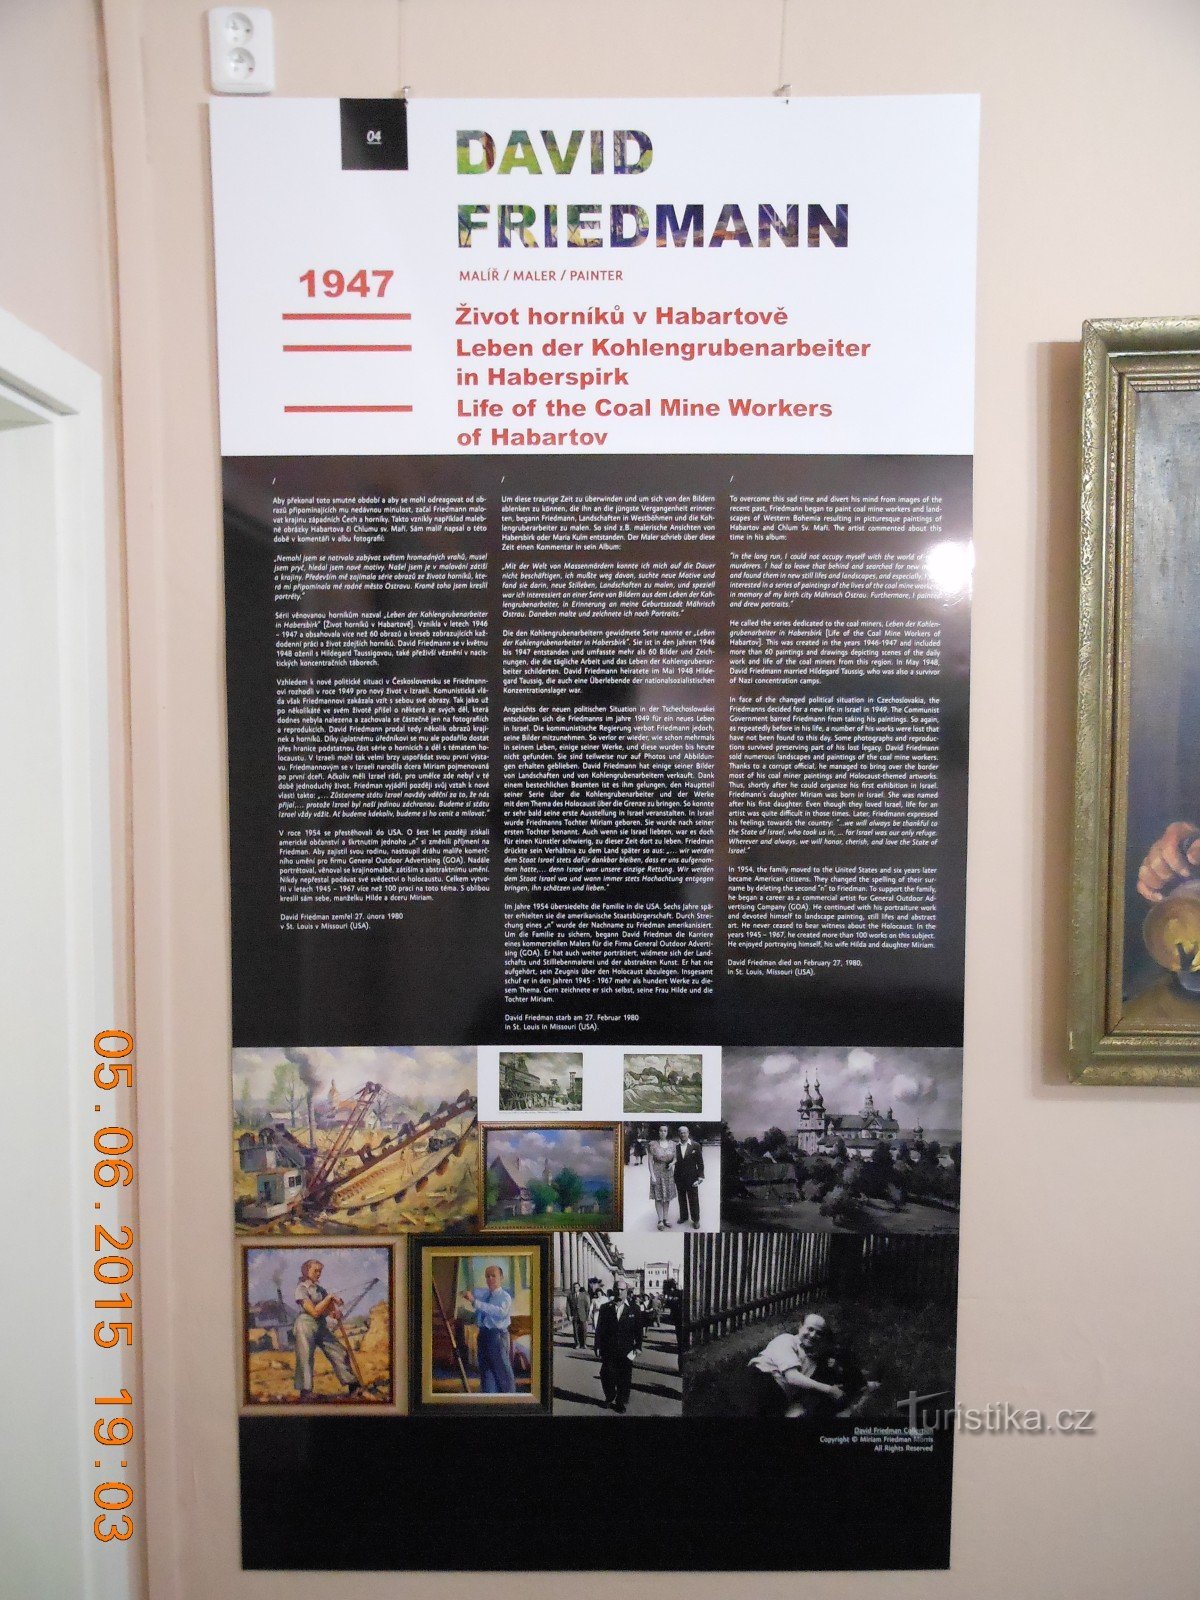 DAVID FRIEDMANN kiállítás - Sokolov Múzeum